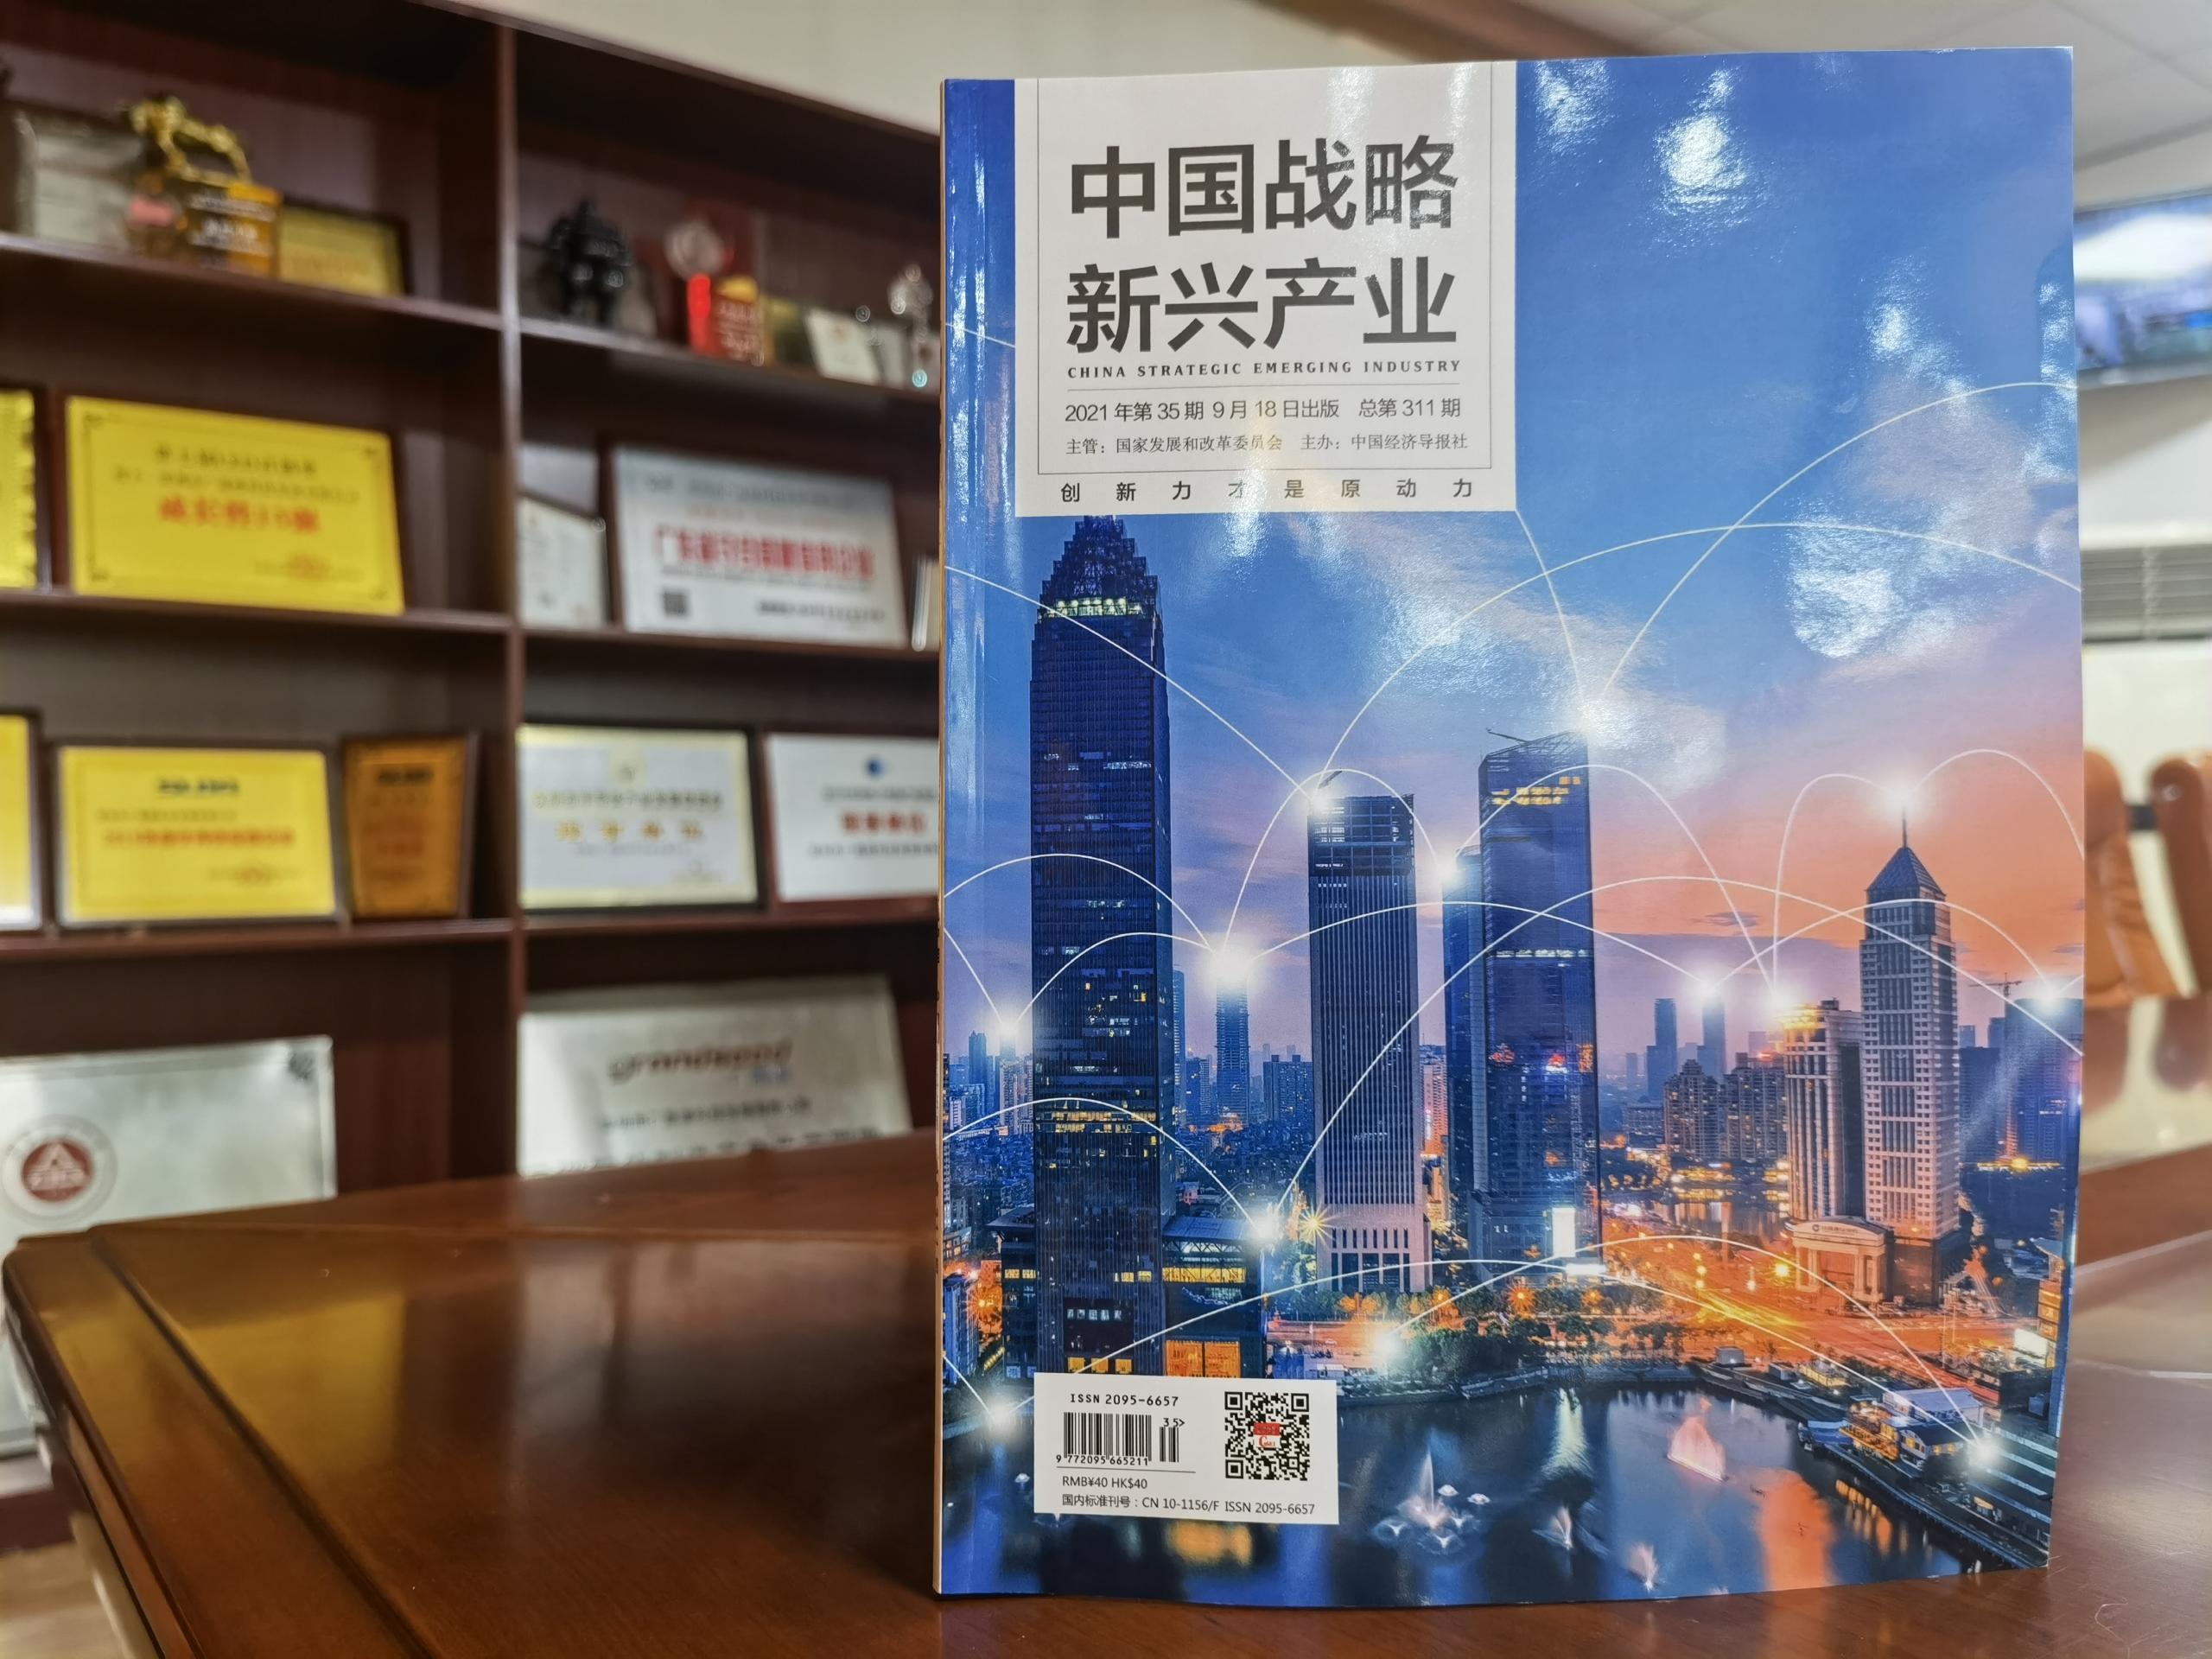 《中国战略新兴产业》第35期出版刊登广晟德论文

